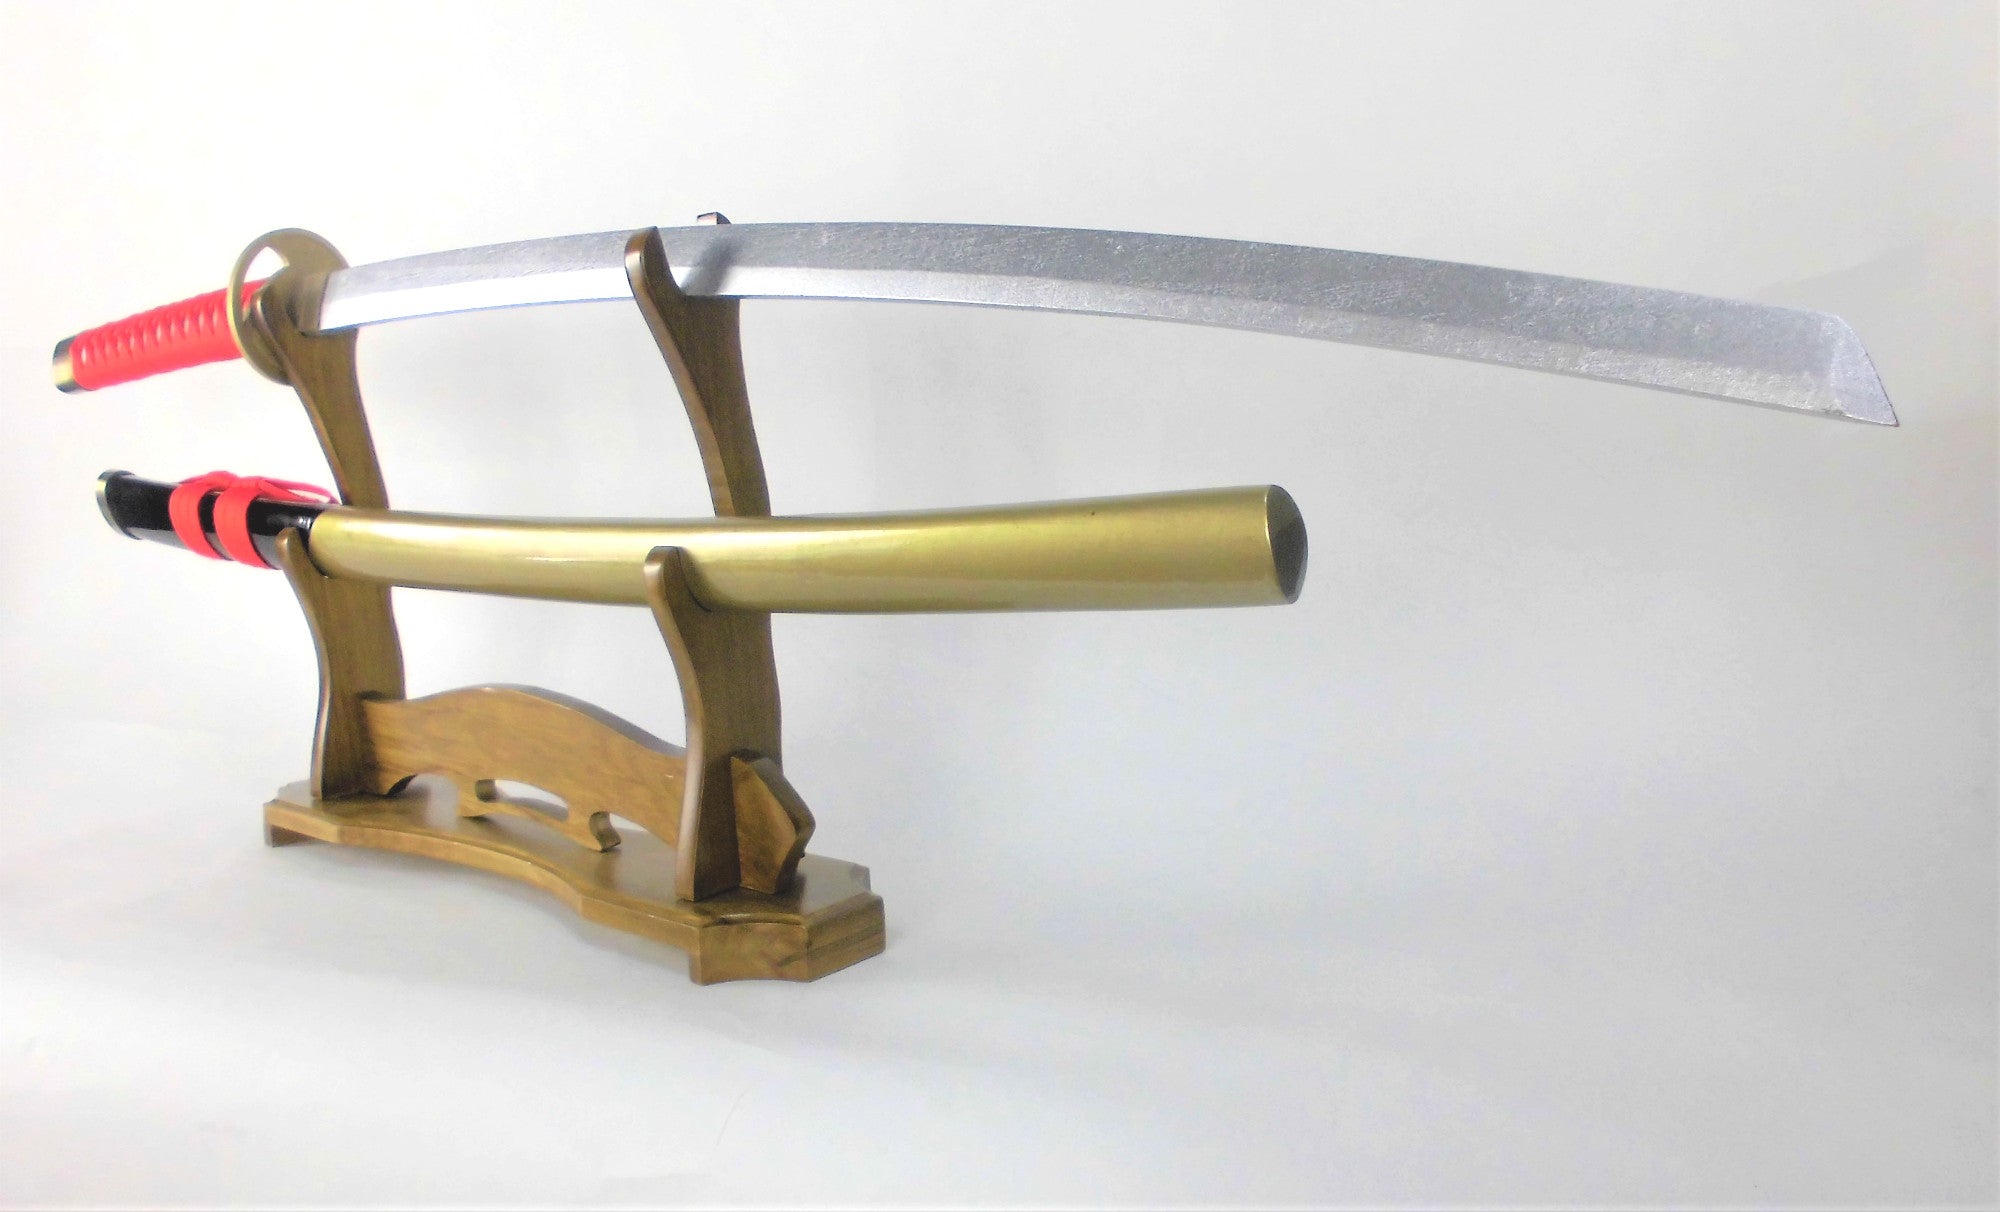 へし切長谷部 へしきりはせべ 刀掛別売  日本刀 模造刀 武士刀 木製 木 コスプレ 飾り S320